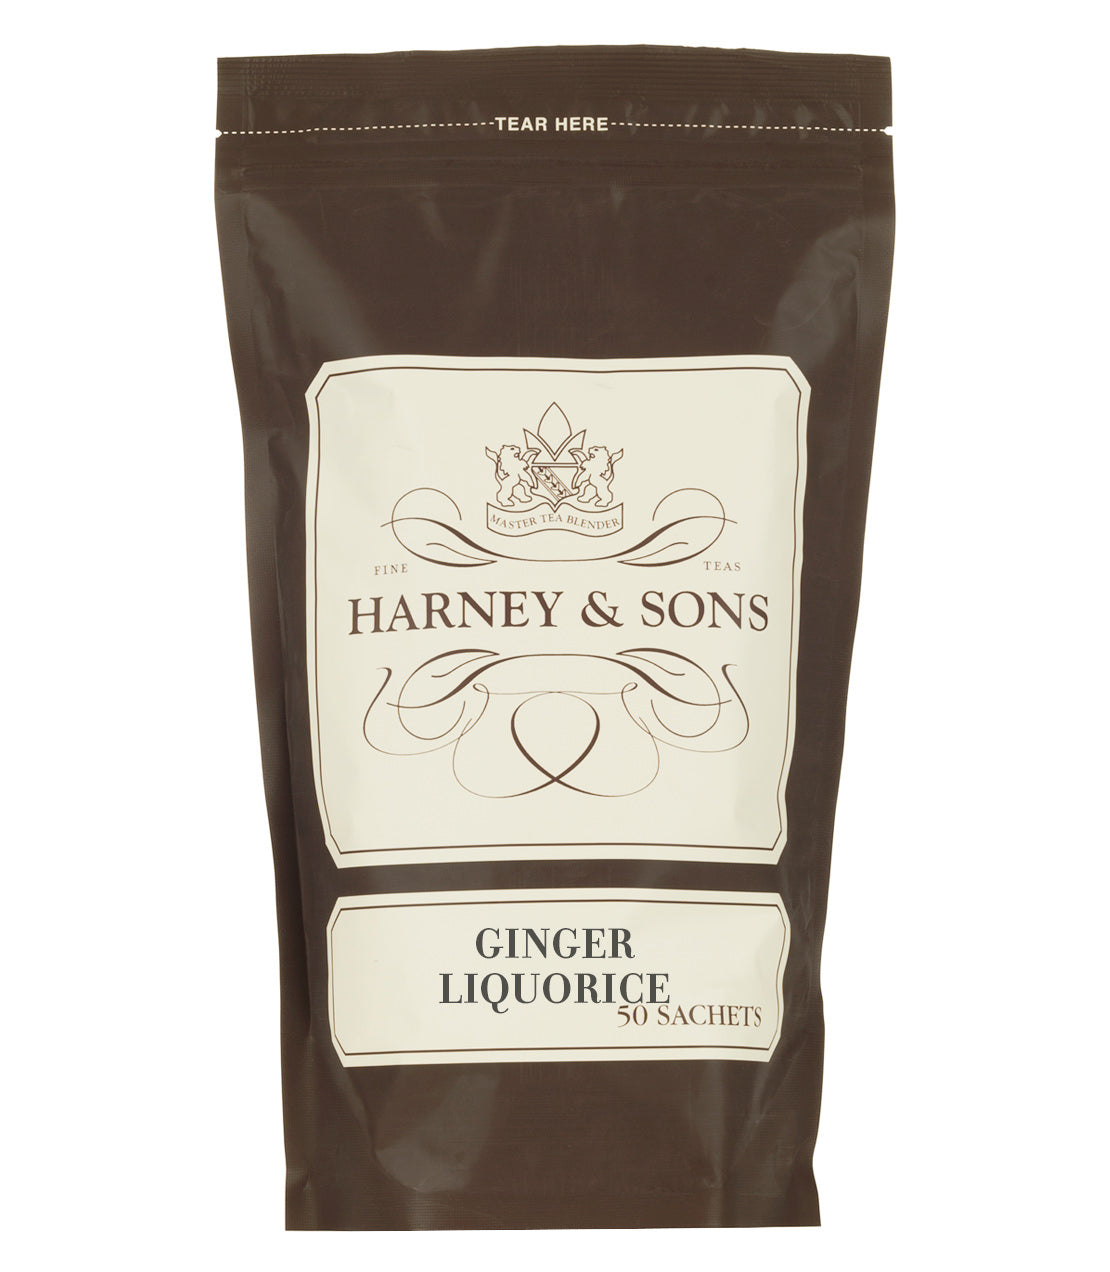 Ginger Liquorice - Sachets Bag of 50 Sachets - Harney & Sons Fine Teas